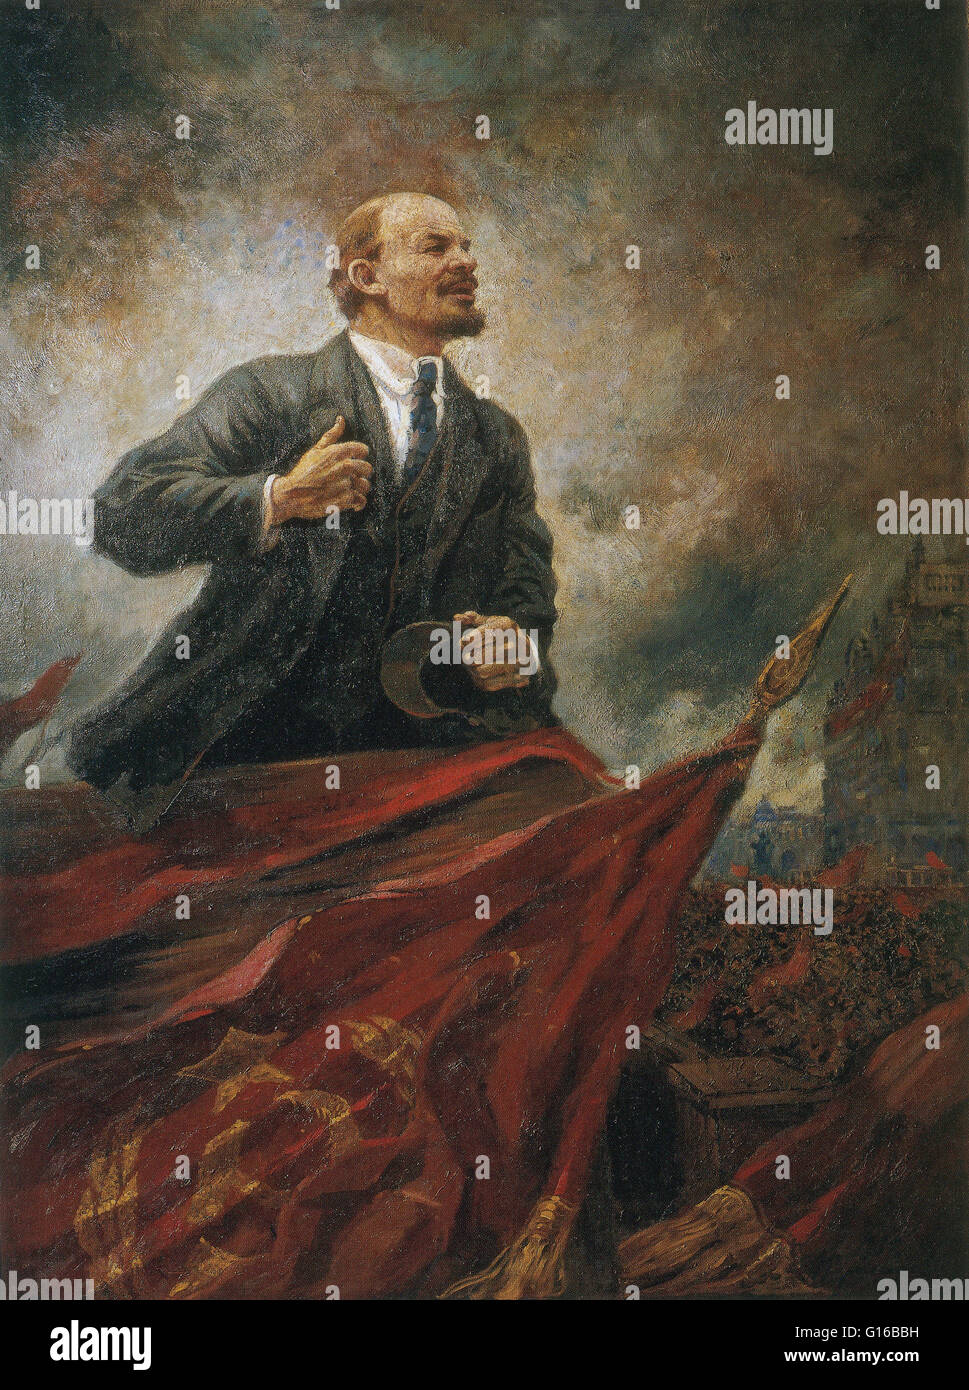 "Lenin sul podio", dipinto postumo nel 1929 da Aleksandr Gerasimov. Vladimir Ilyich Lenin (Aprile 22, 1870 - 21 gennaio 1924) era un russo rivoluzionario marxista, comunista, statista russo e teorico marxista. Lenin era il firs Foto Stock